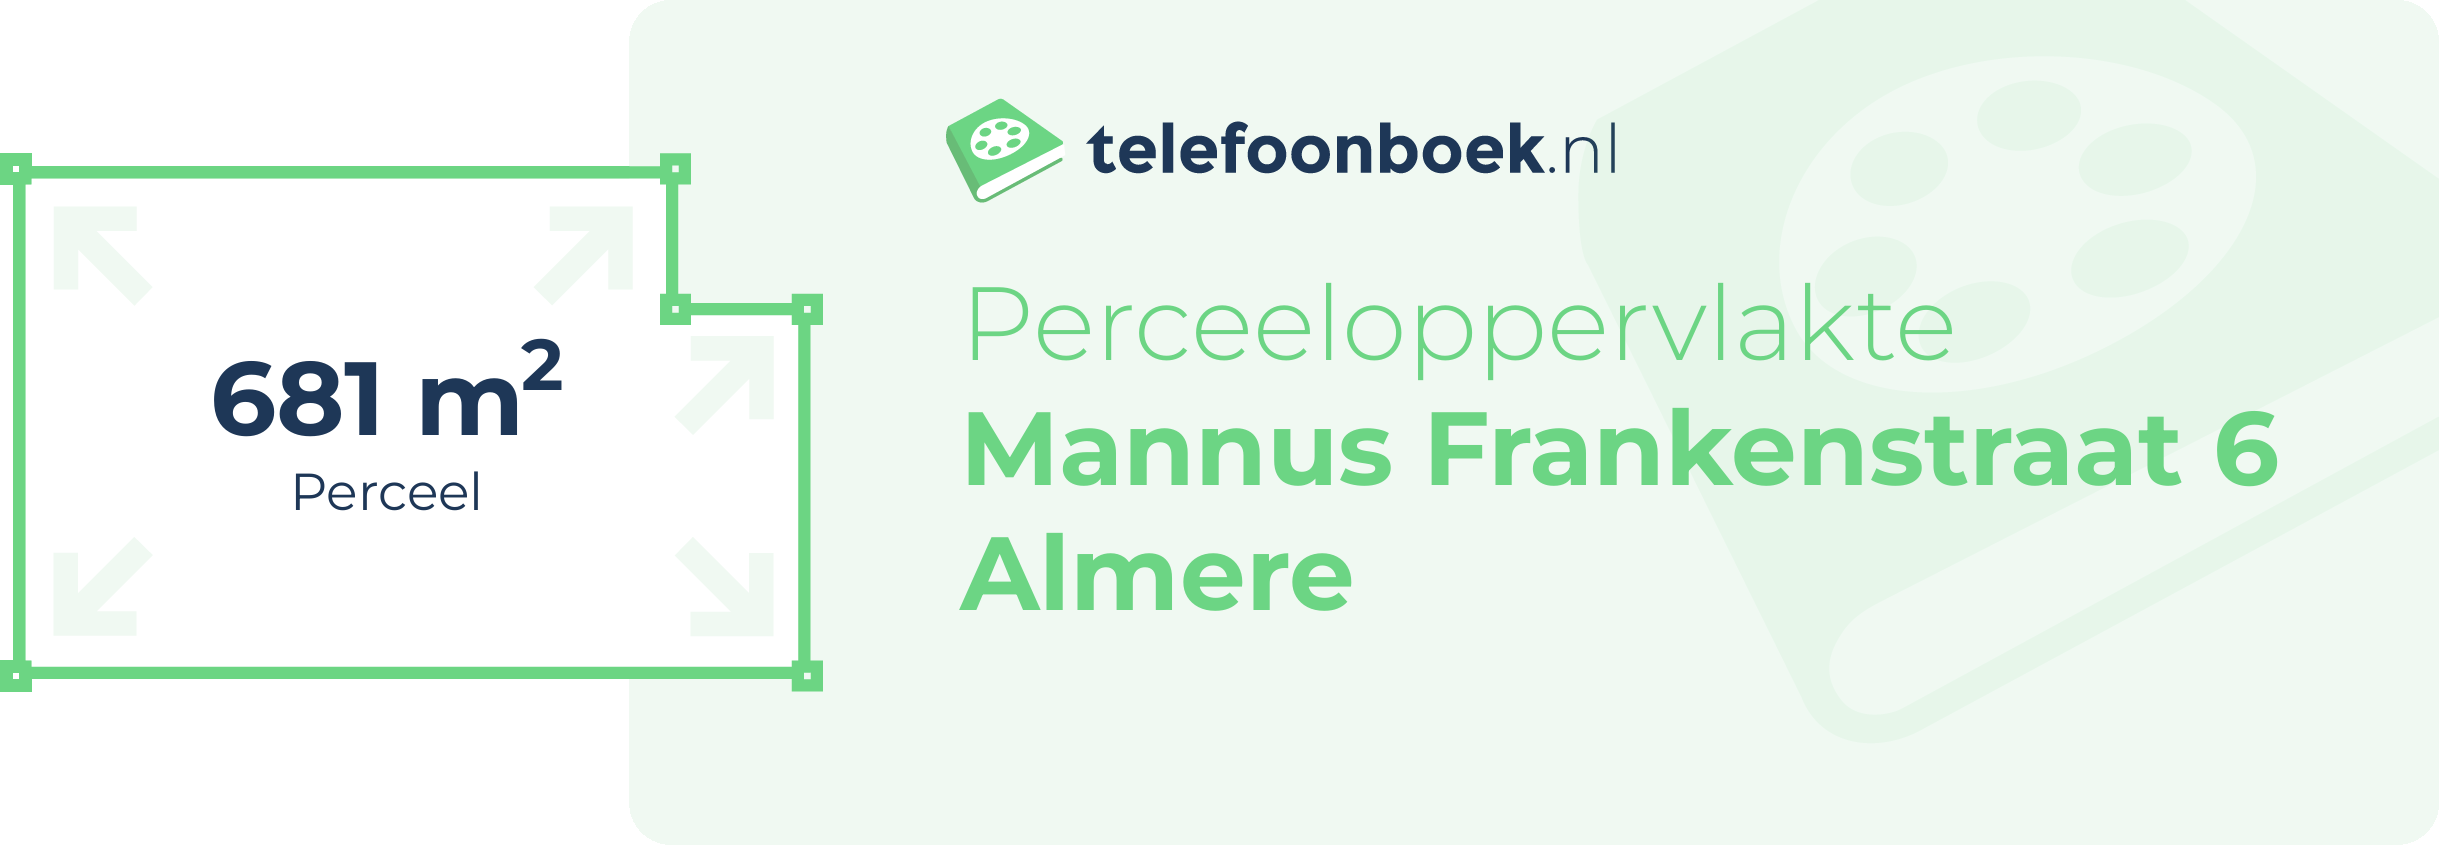 Perceeloppervlakte Mannus Frankenstraat 6 Almere